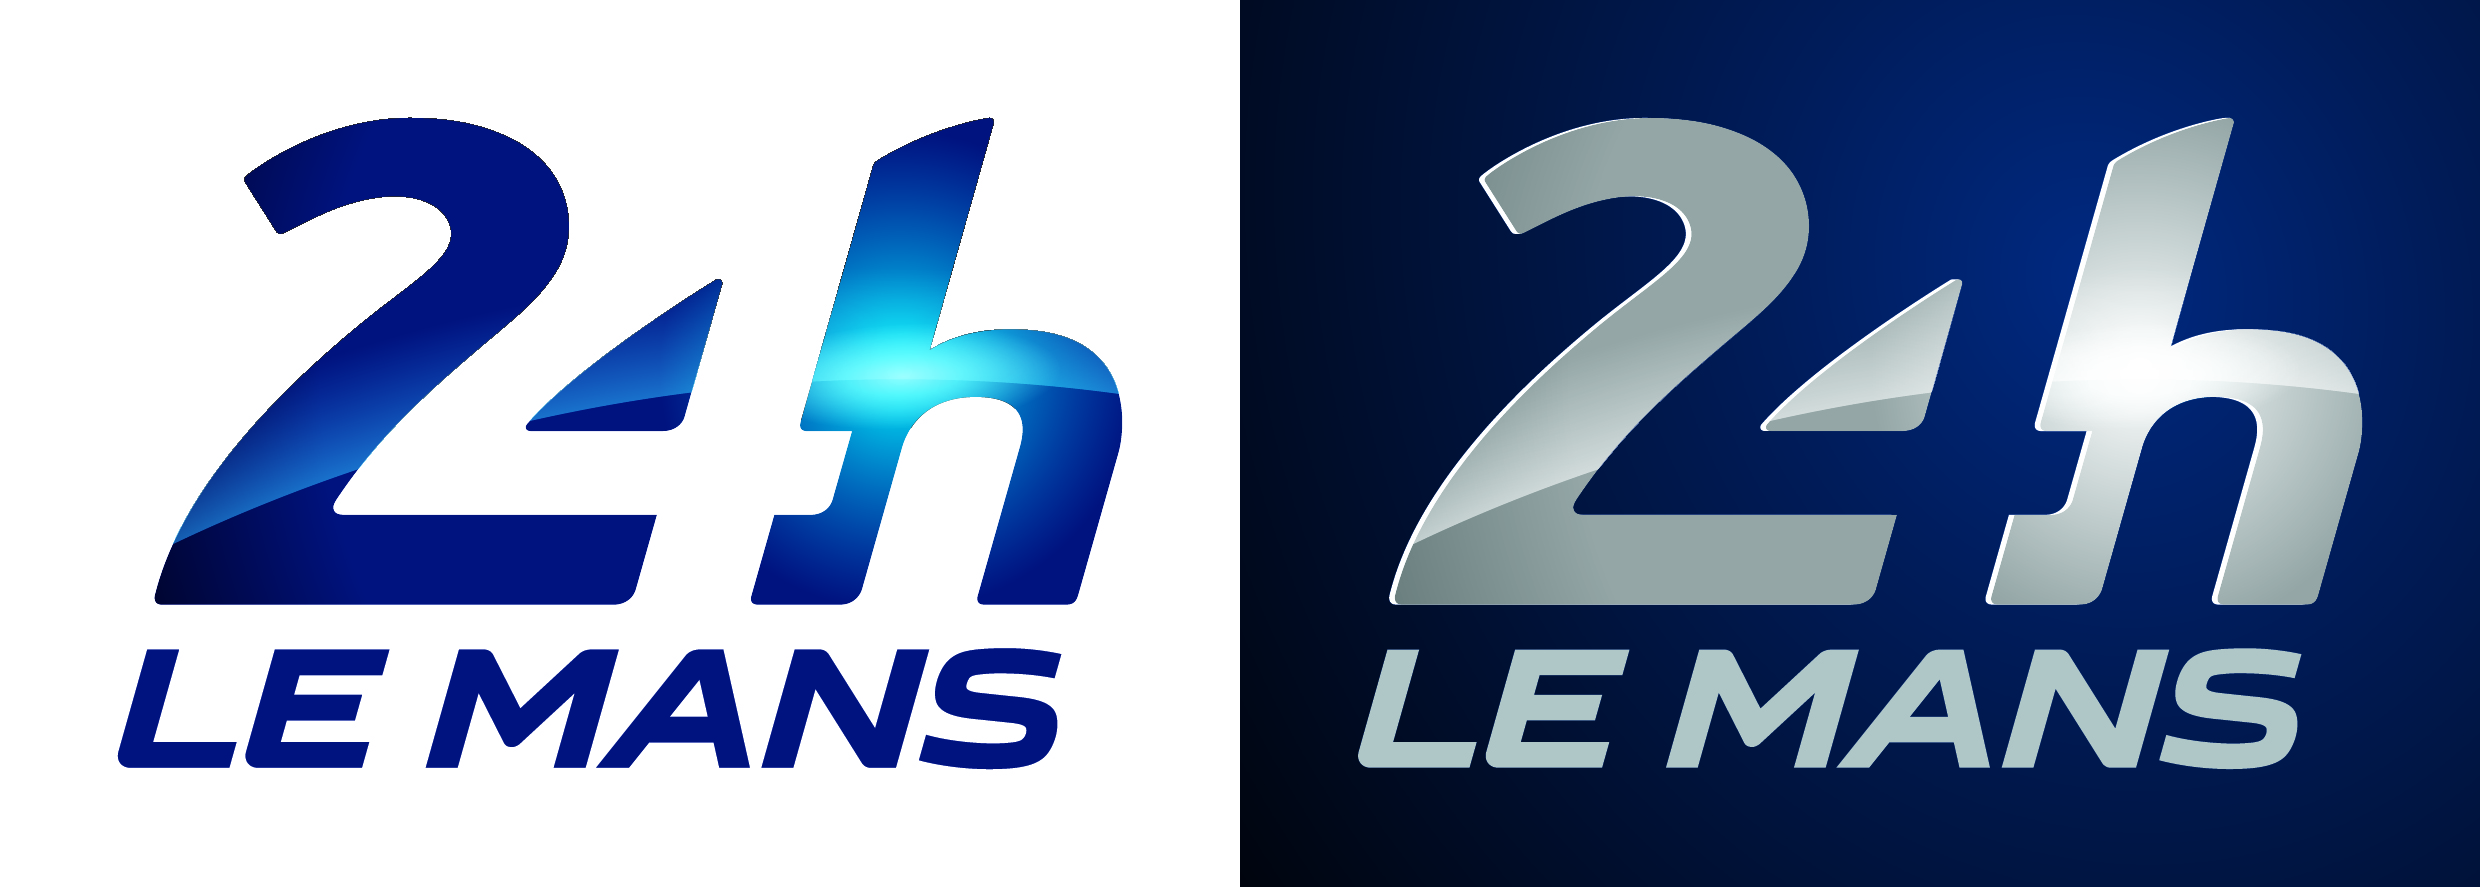 nouveau logo 24h le mans